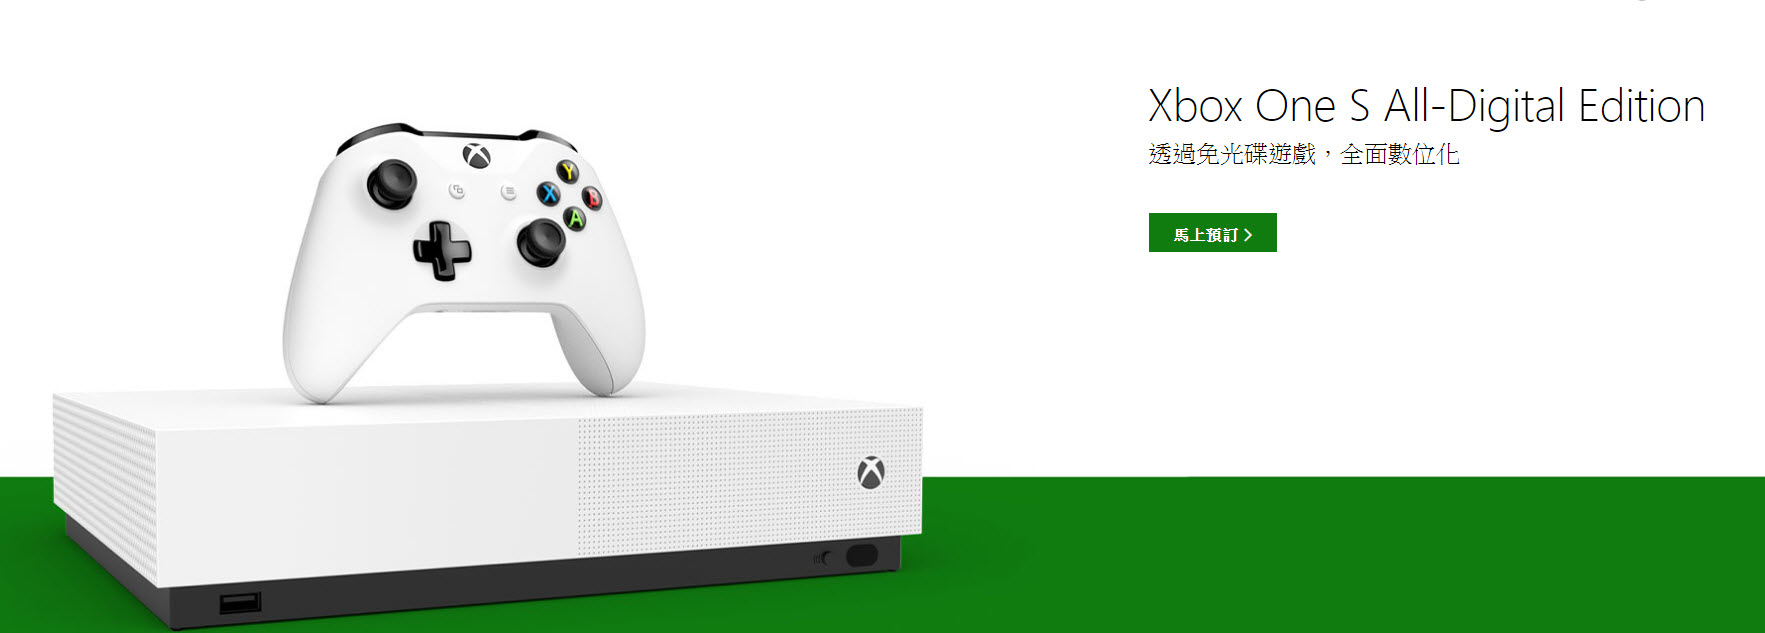 「 Xbox One S All-Digital Edition 」遊戲主機